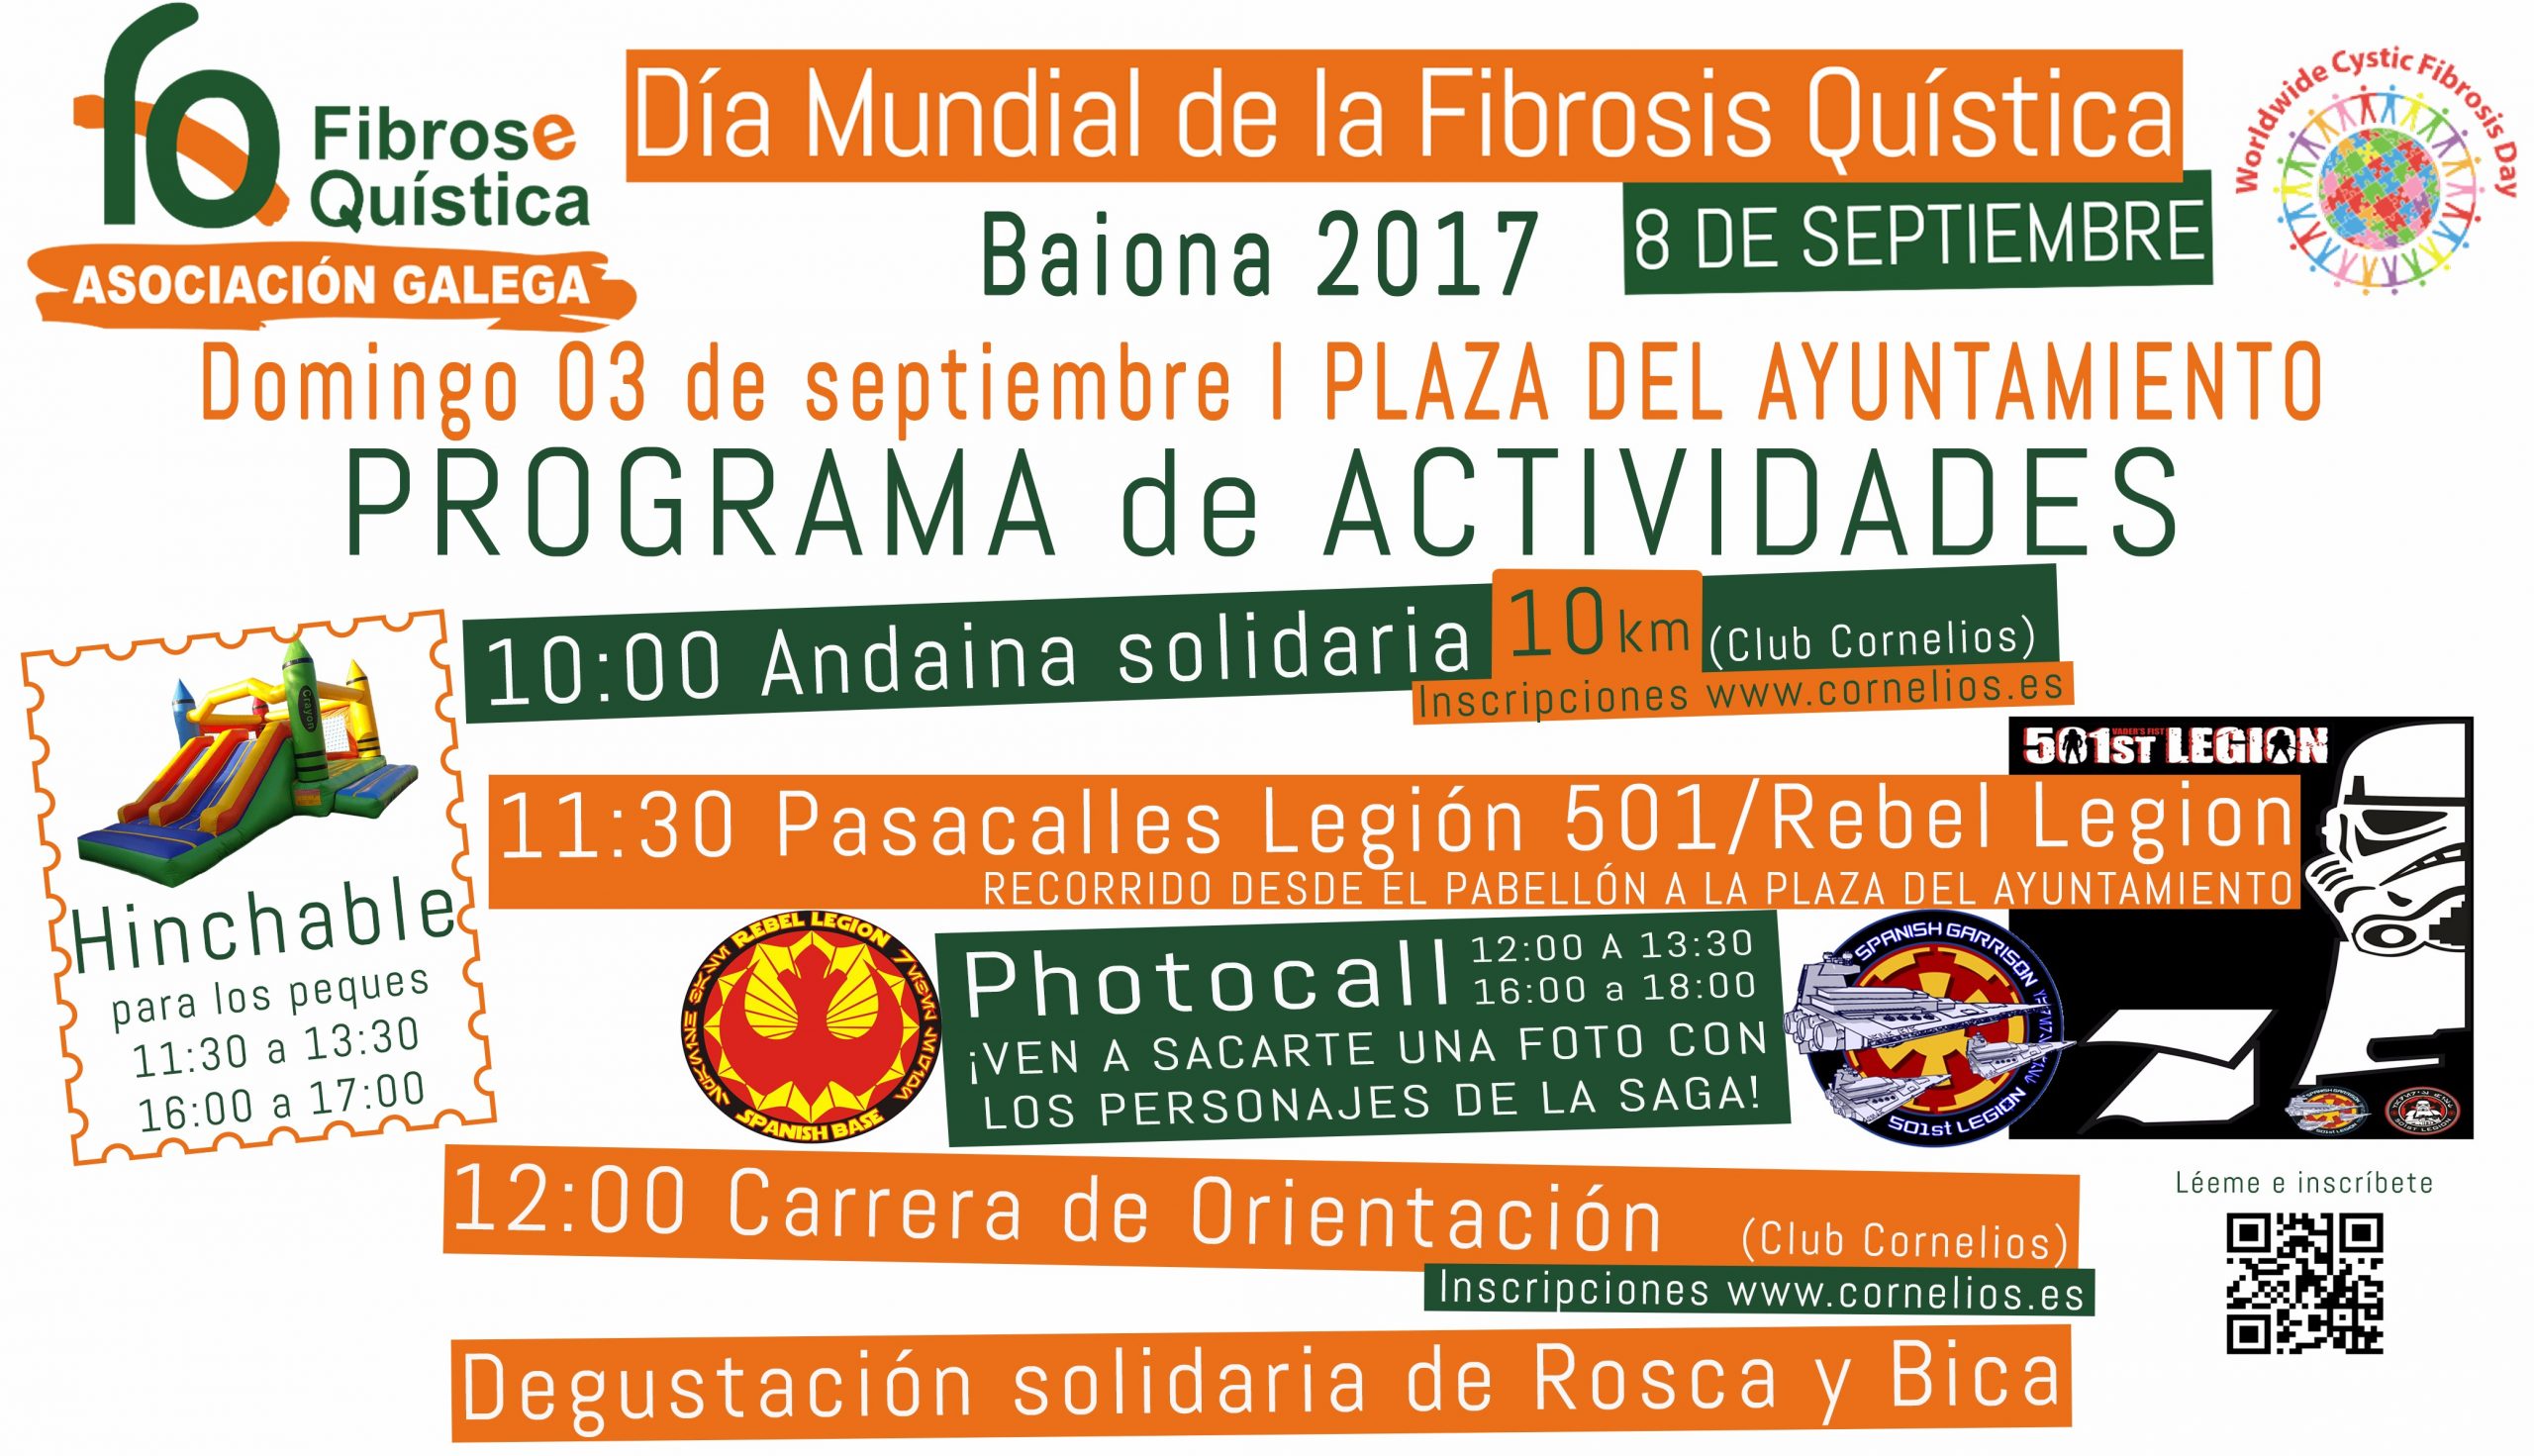 federacion española fibrosis quistica la asociacion gallega prepara multiples actividades para el dia mundial de la fibrosis quistica scaled